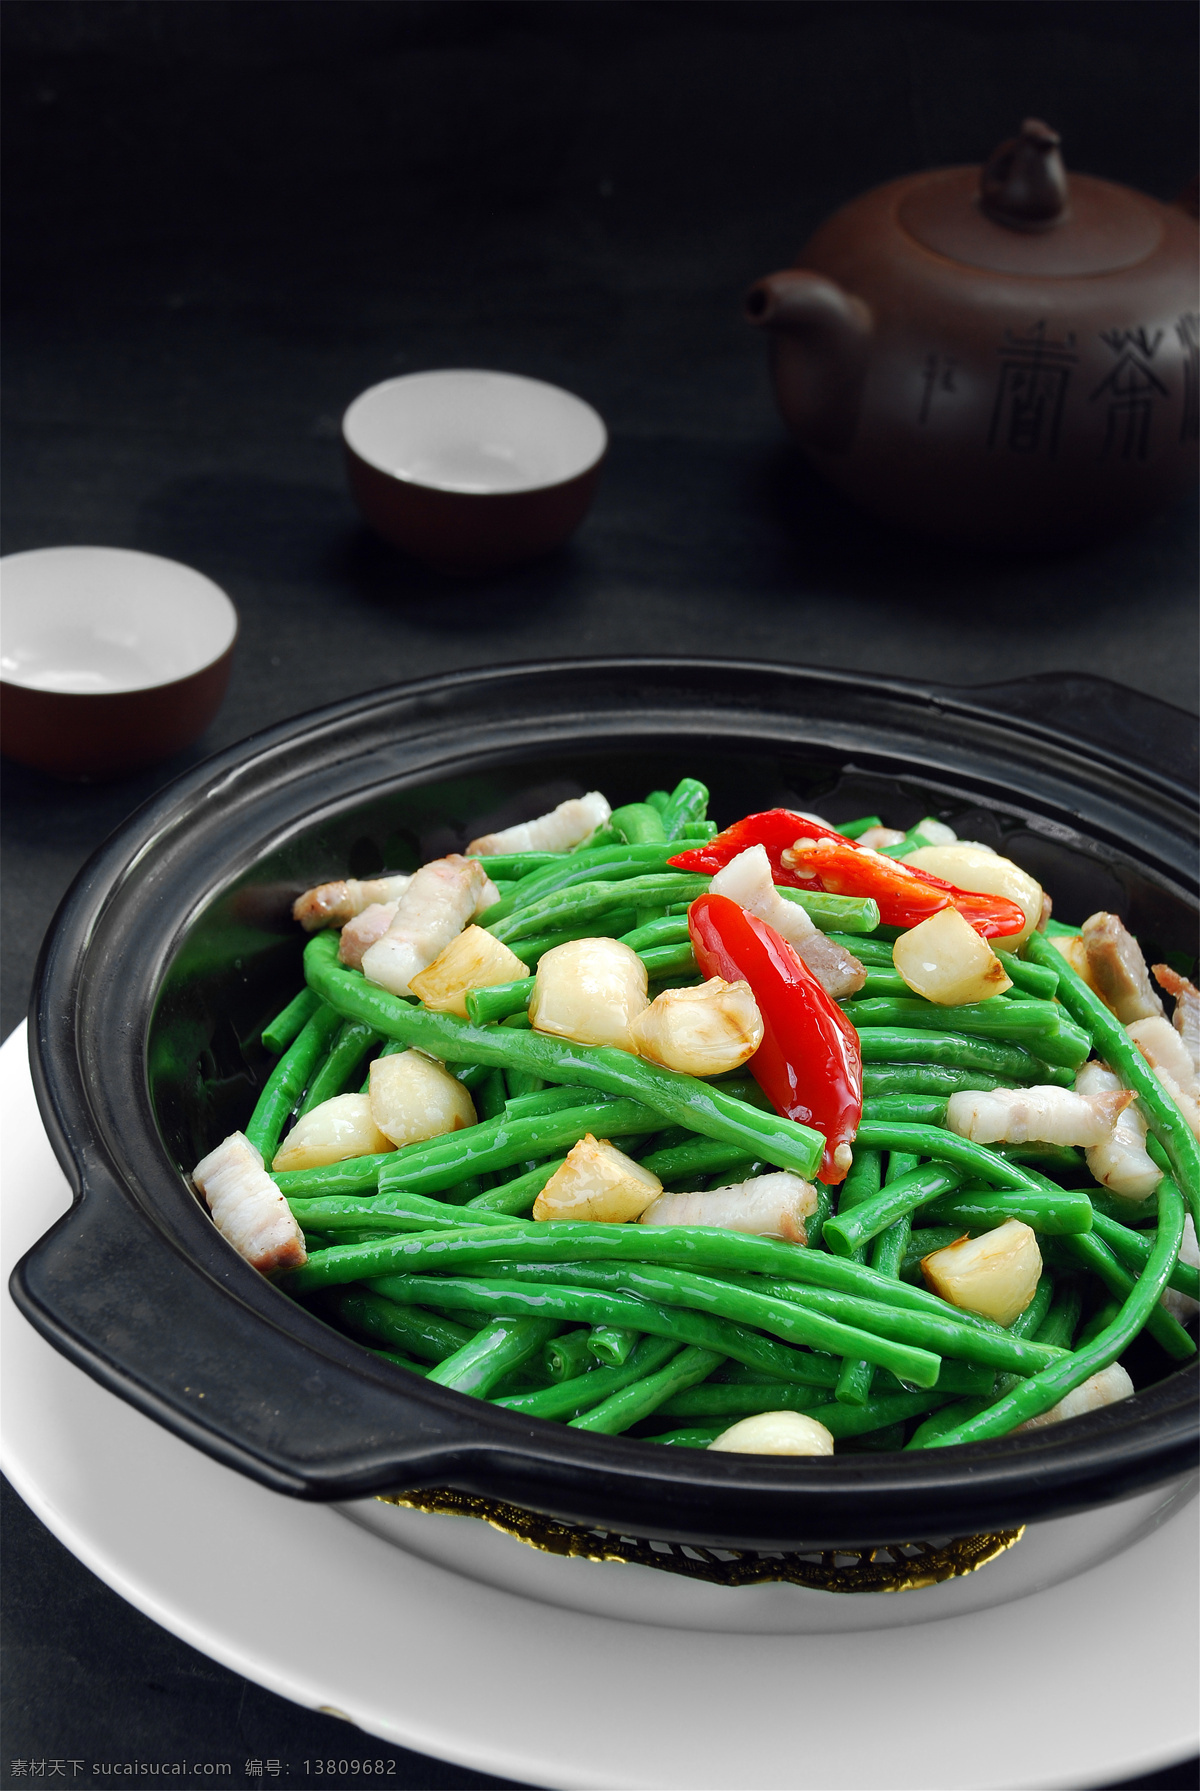 砂锅 焗 豇豆 砂锅焗豇豆 美食 传统美食 餐饮美食 高清菜谱用图